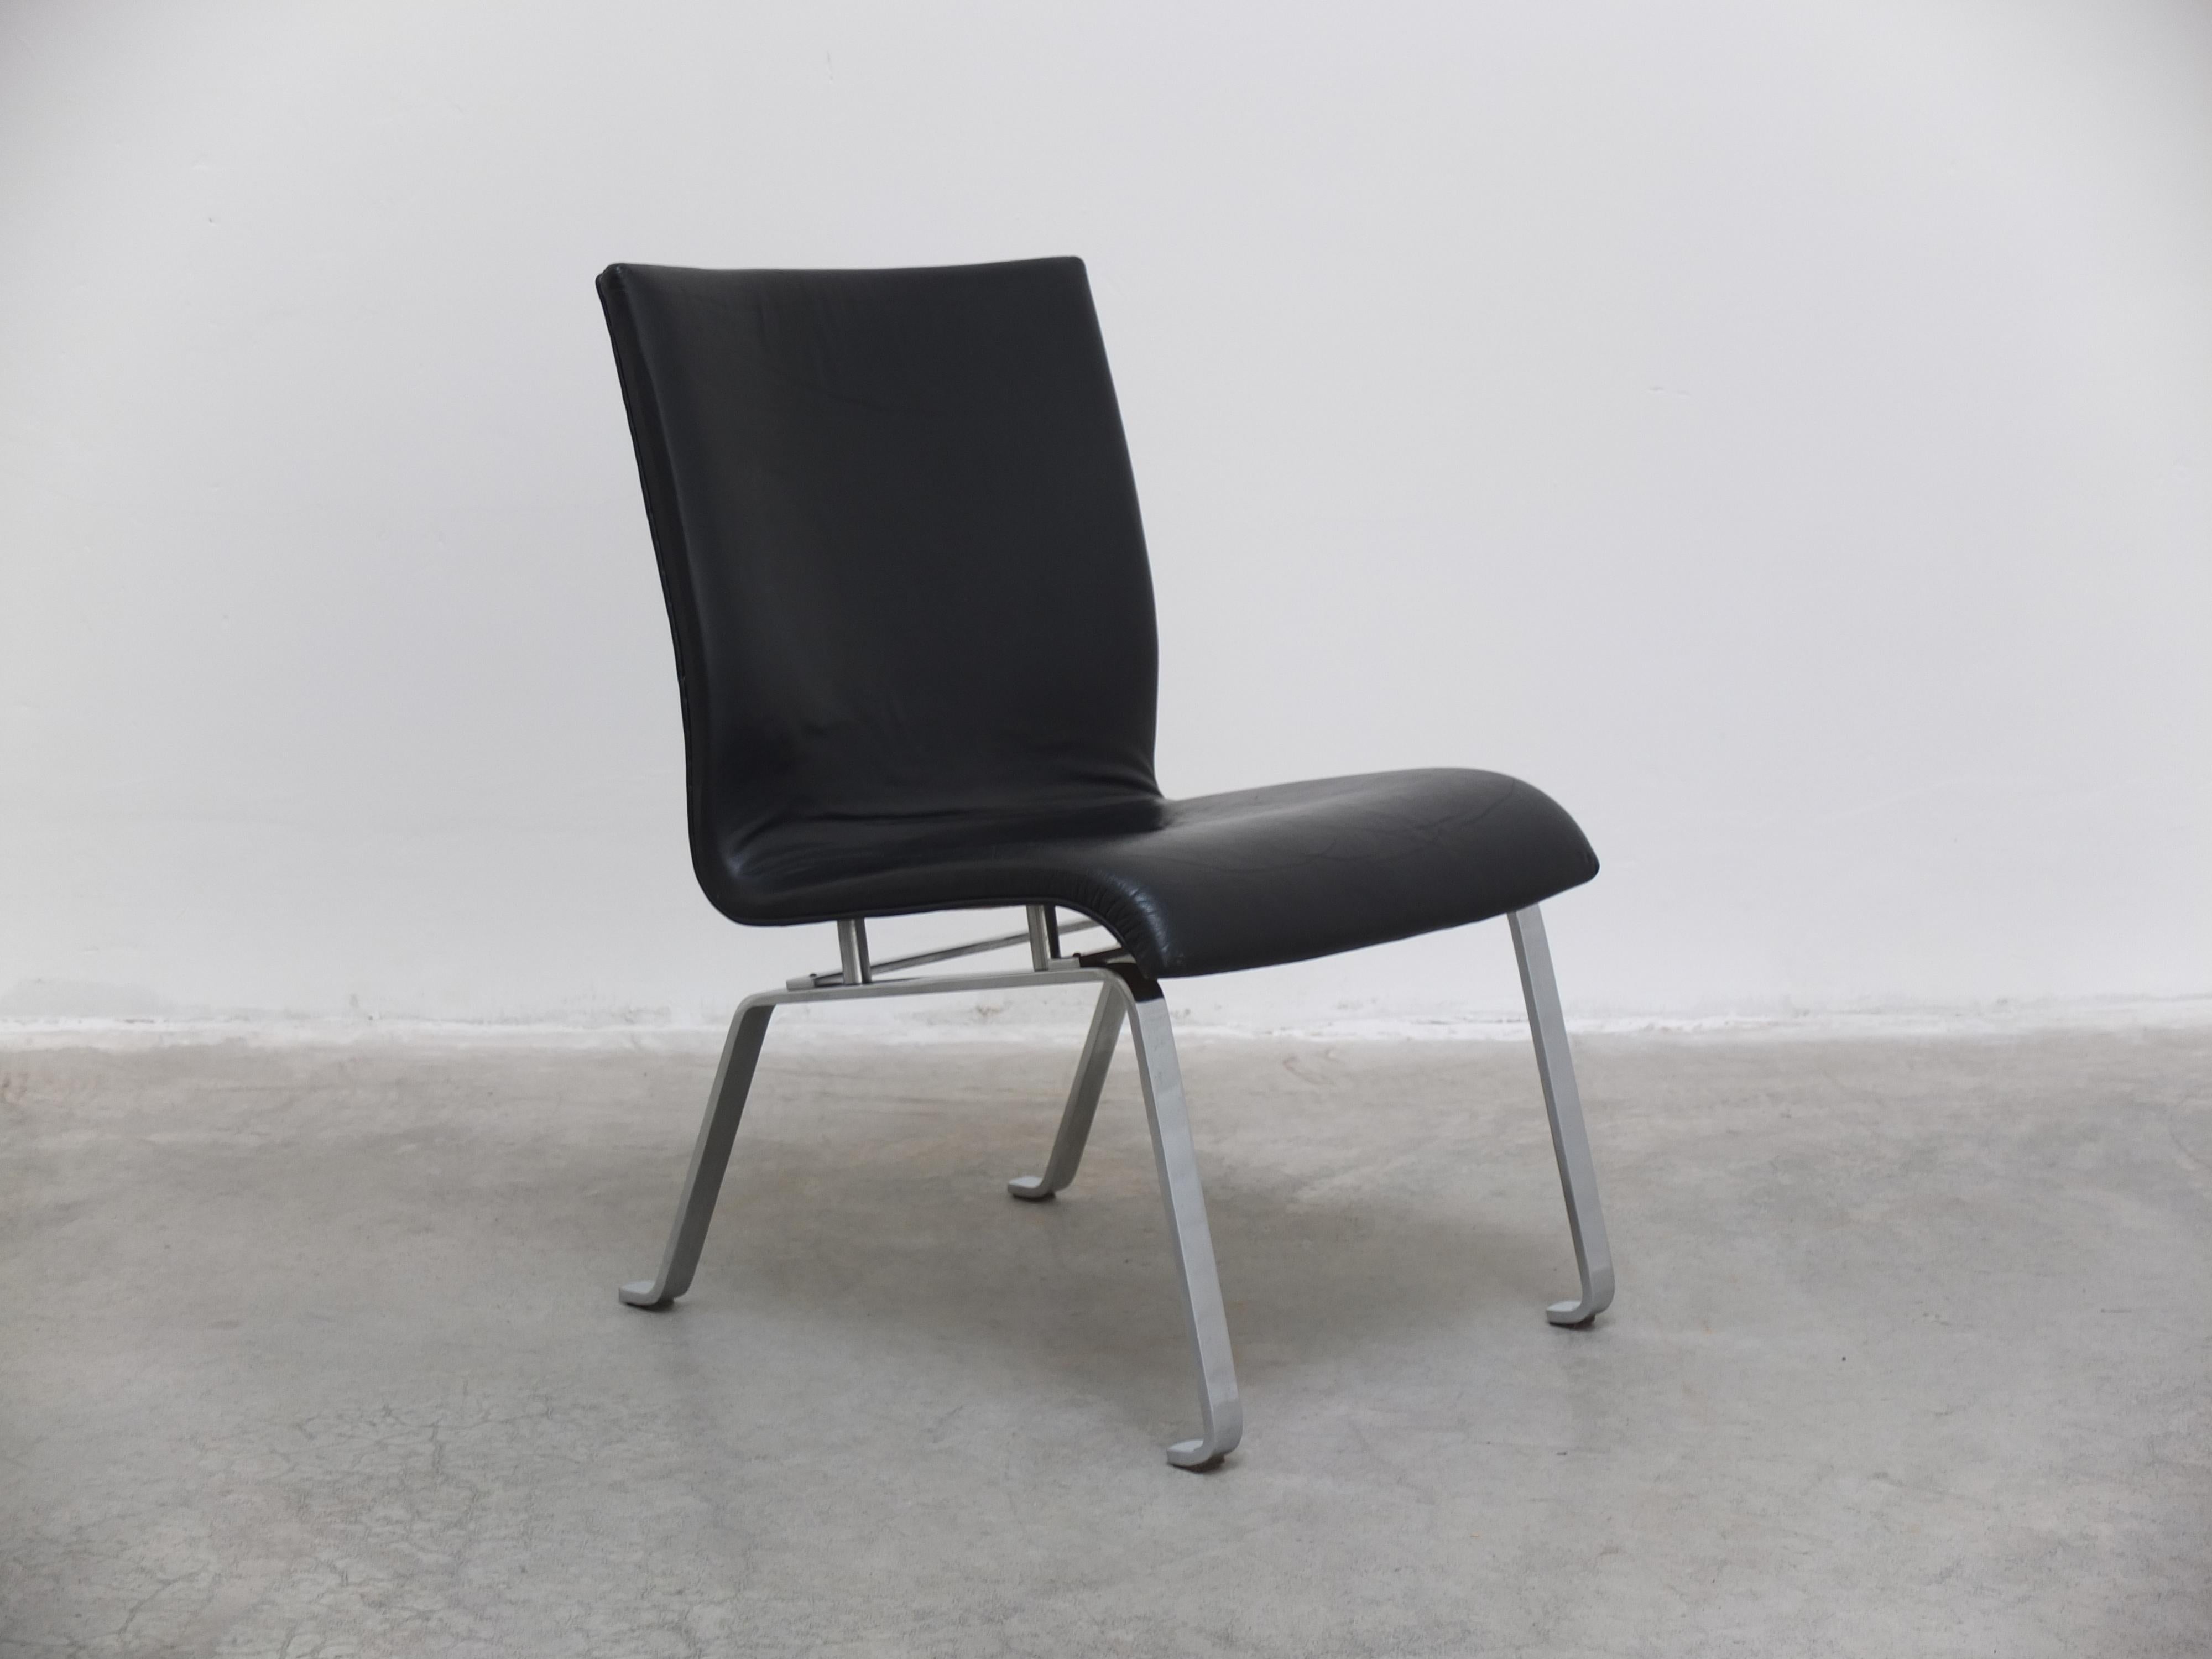 Ein außergewöhnlicher Fund ist dieser modernistische Sessel, der um 1960 in Dänemark hergestellt wurde. Gefertigt aus echtem schwarzem Leder in Kombination mit einem verchromten Flachstahlfuß. Dieses minimalistische Design weist Ähnlichkeiten mit